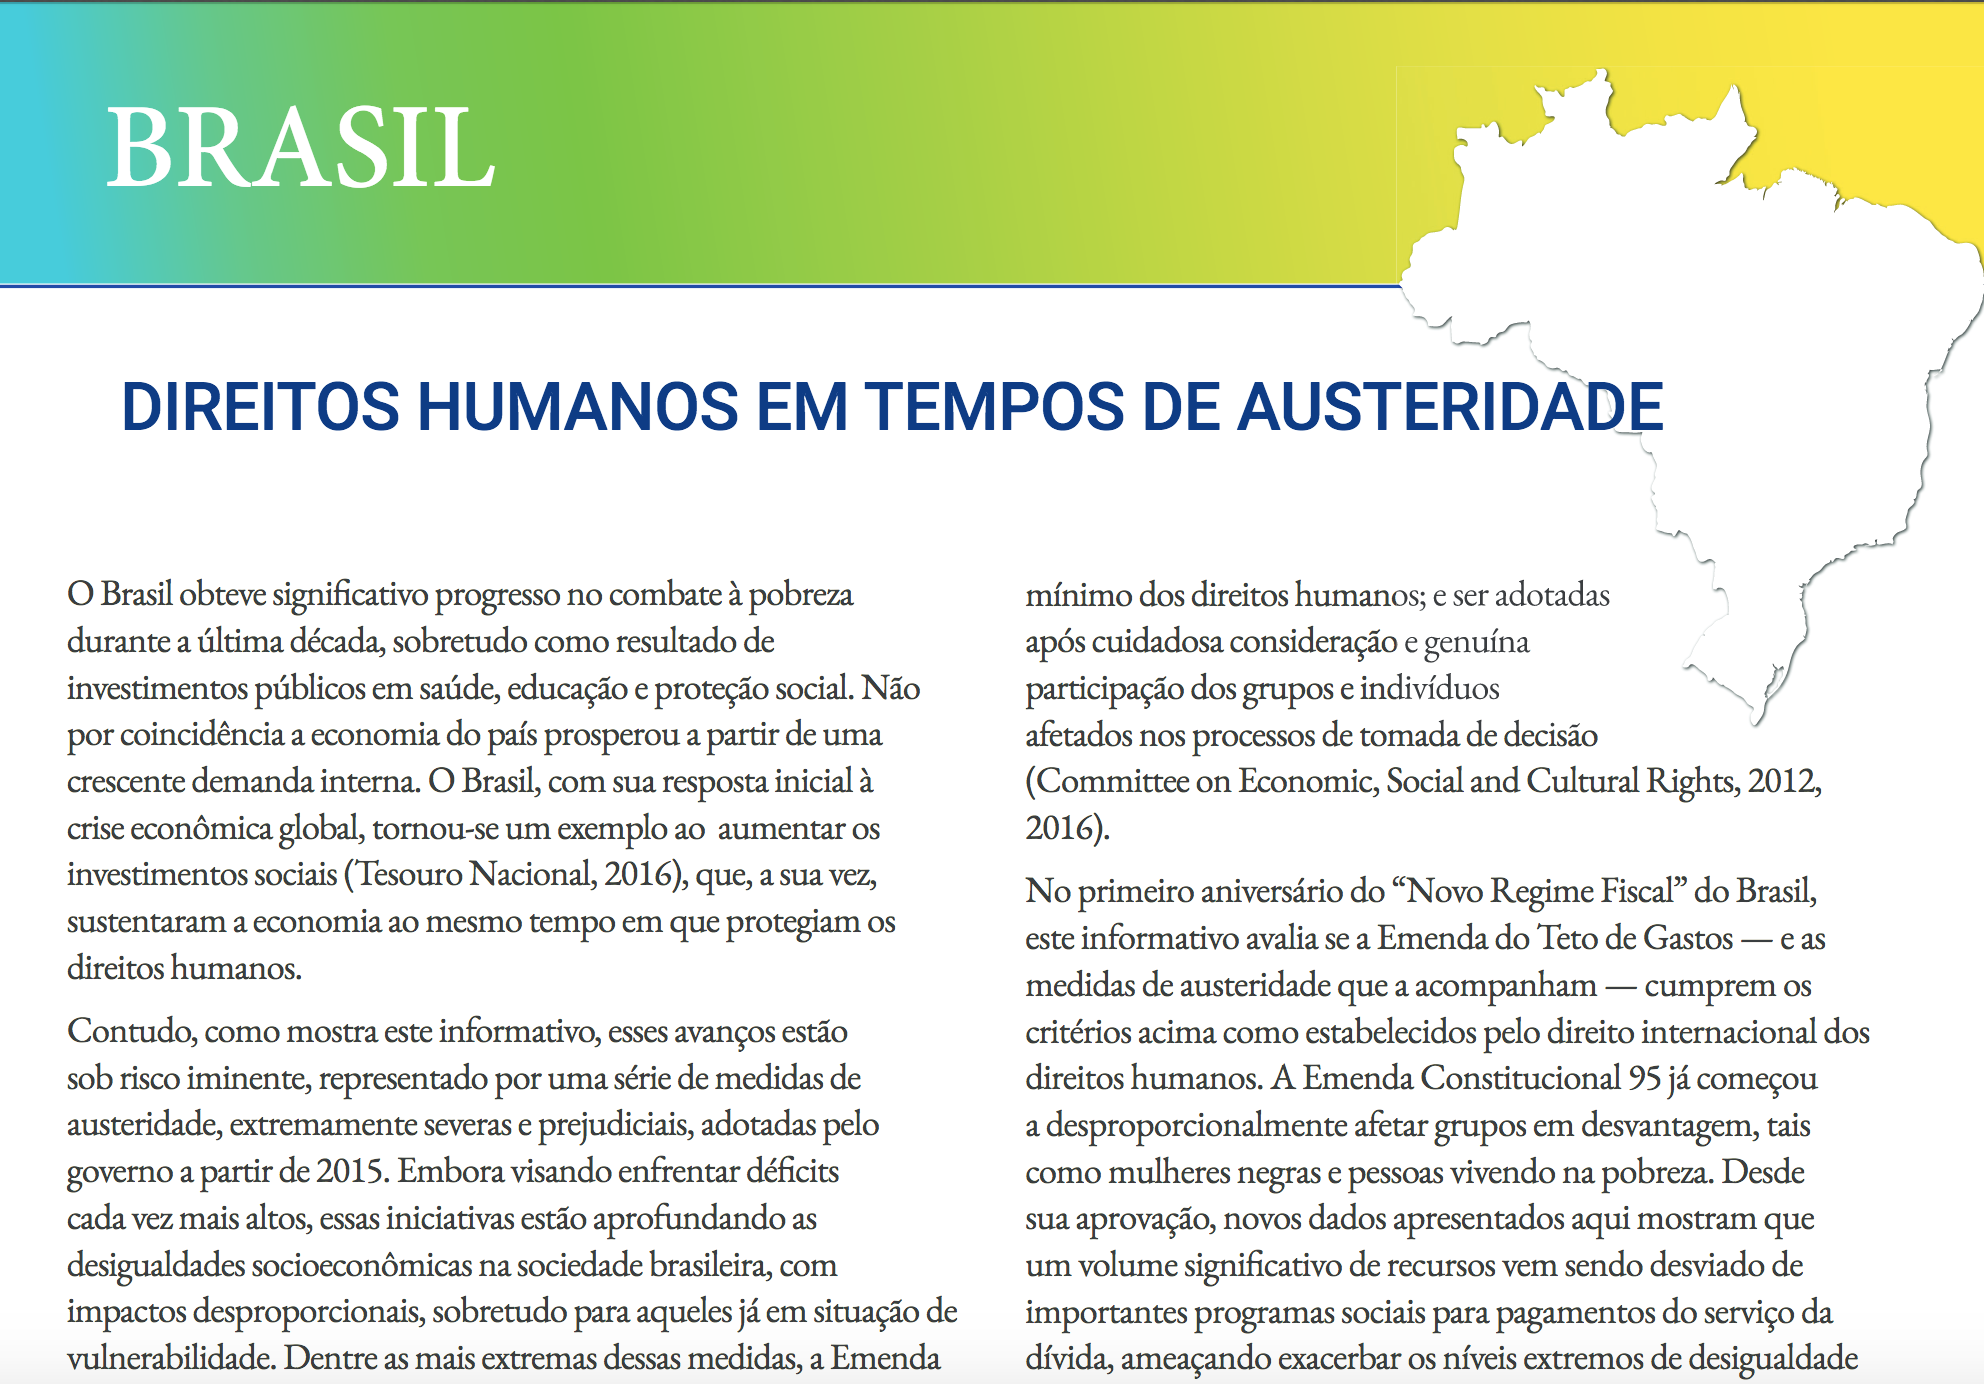 2018-01-08-Brasil Direitos Humanos Em Tempos De Austeridade-BR-IMAGEM